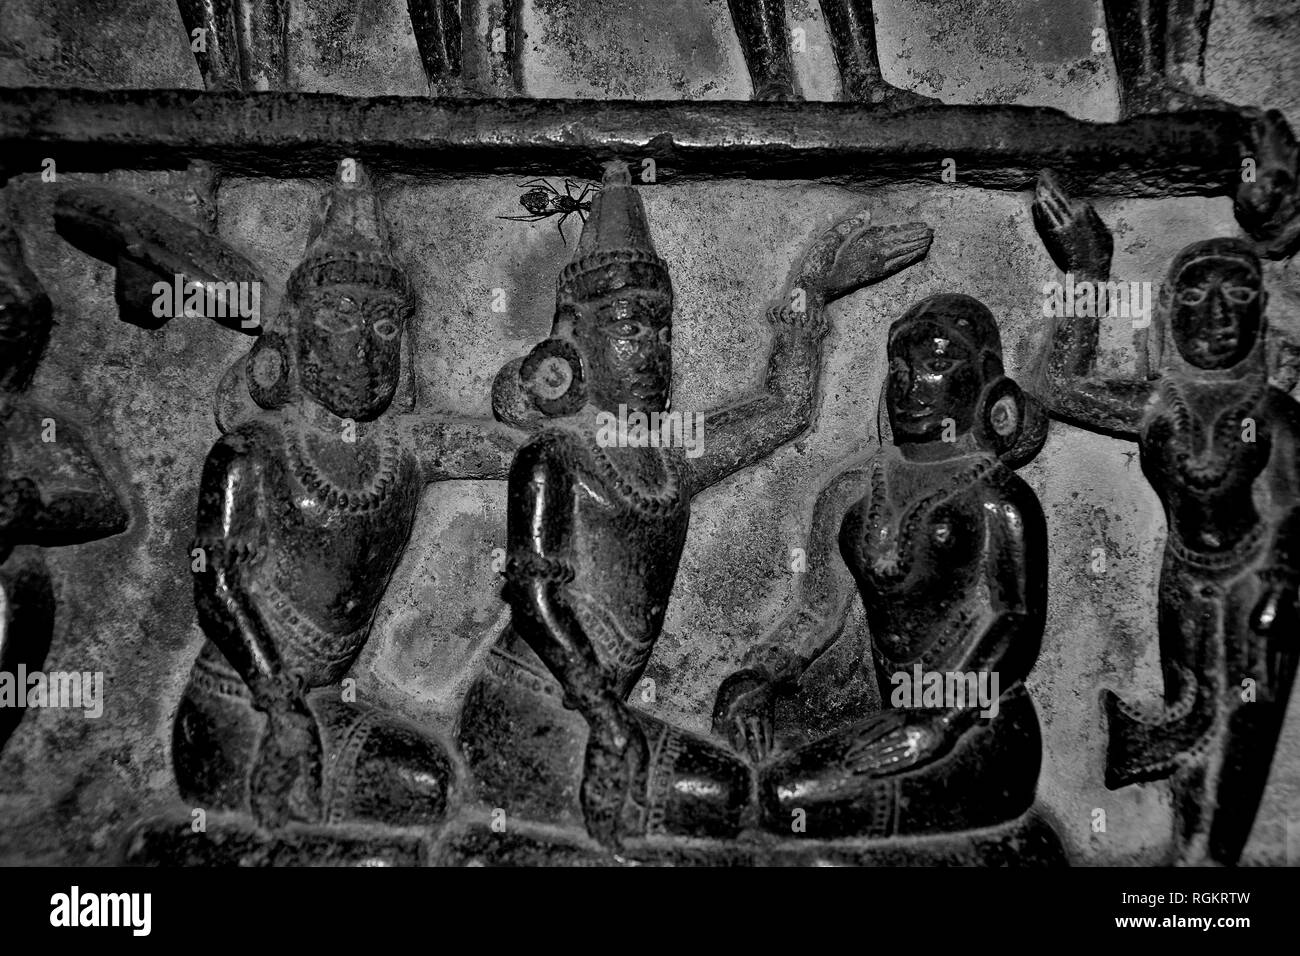 Idoles magnifiquement sculptés sur la paroi interne du Temple Bhuleshwar, Yawat, Maharashtra, Inde Banque D'Images